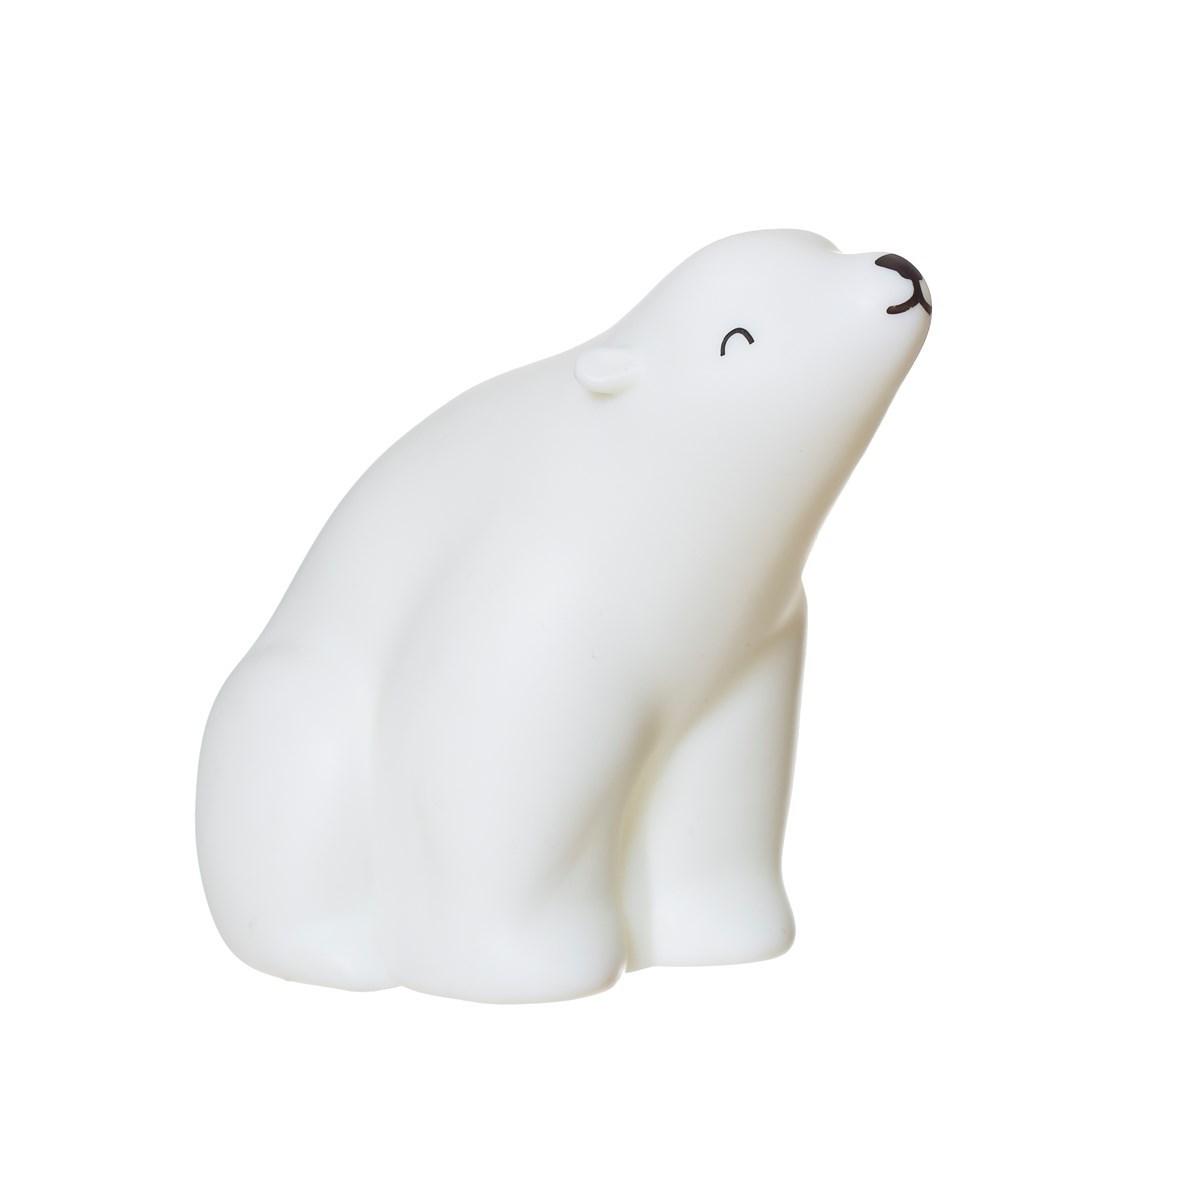 Öölamp Nanook the Polar Bear